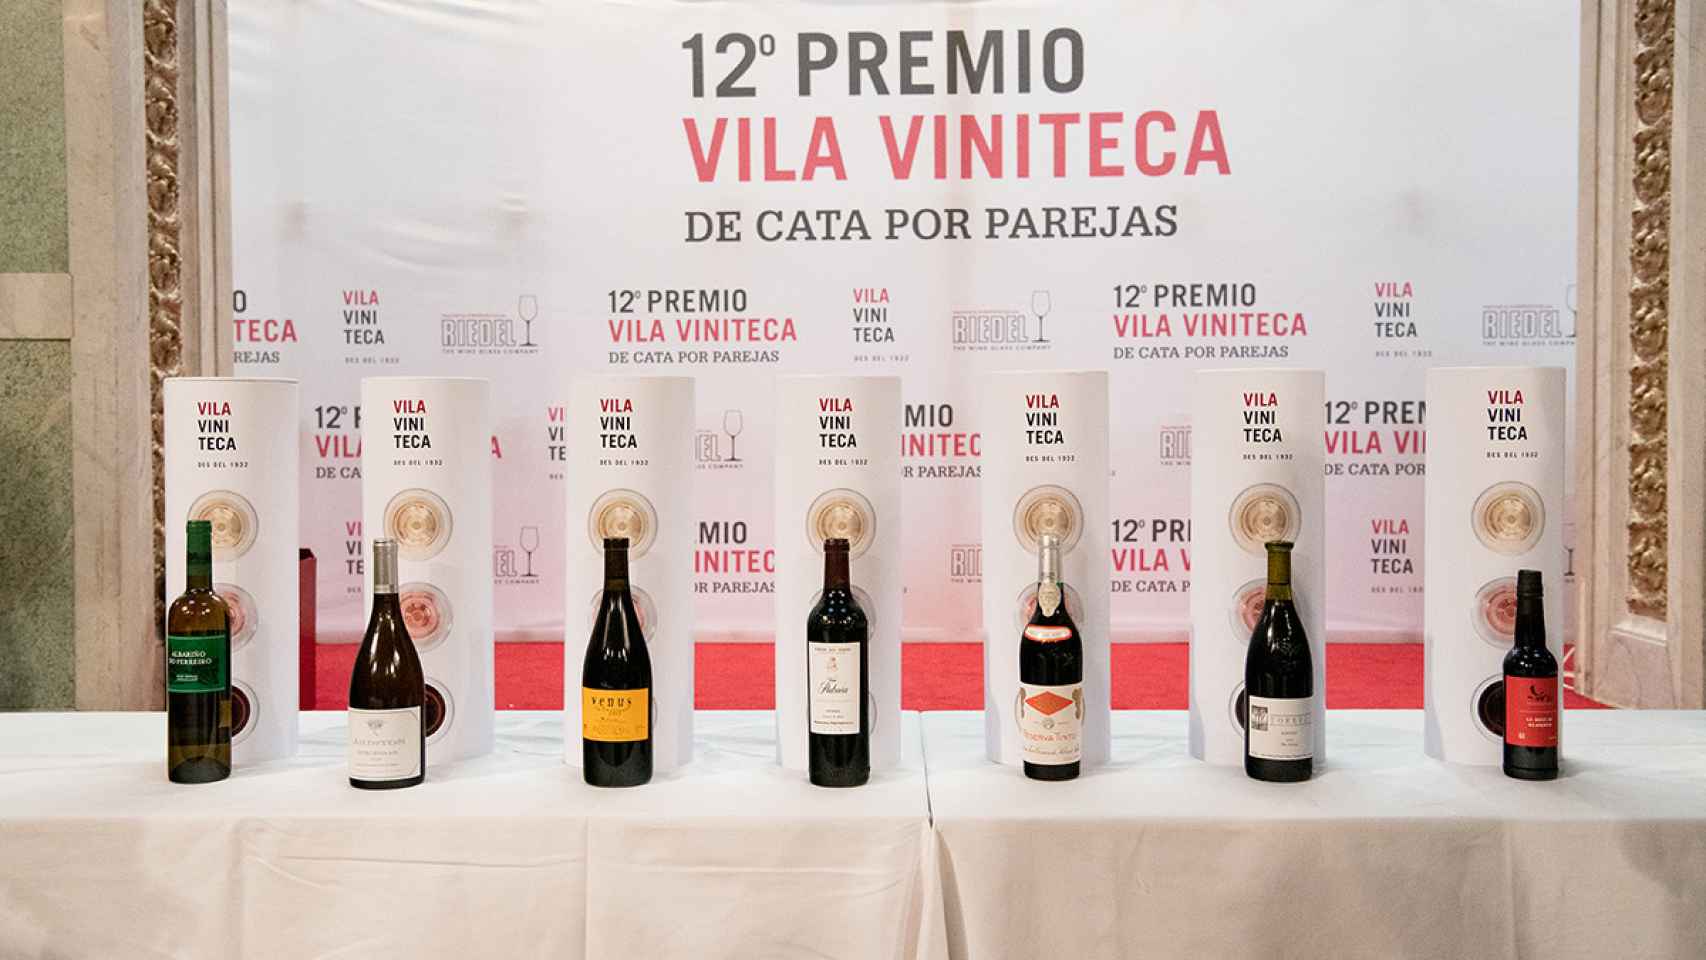 Concurso de cata de vinos por parejas en Barcelona